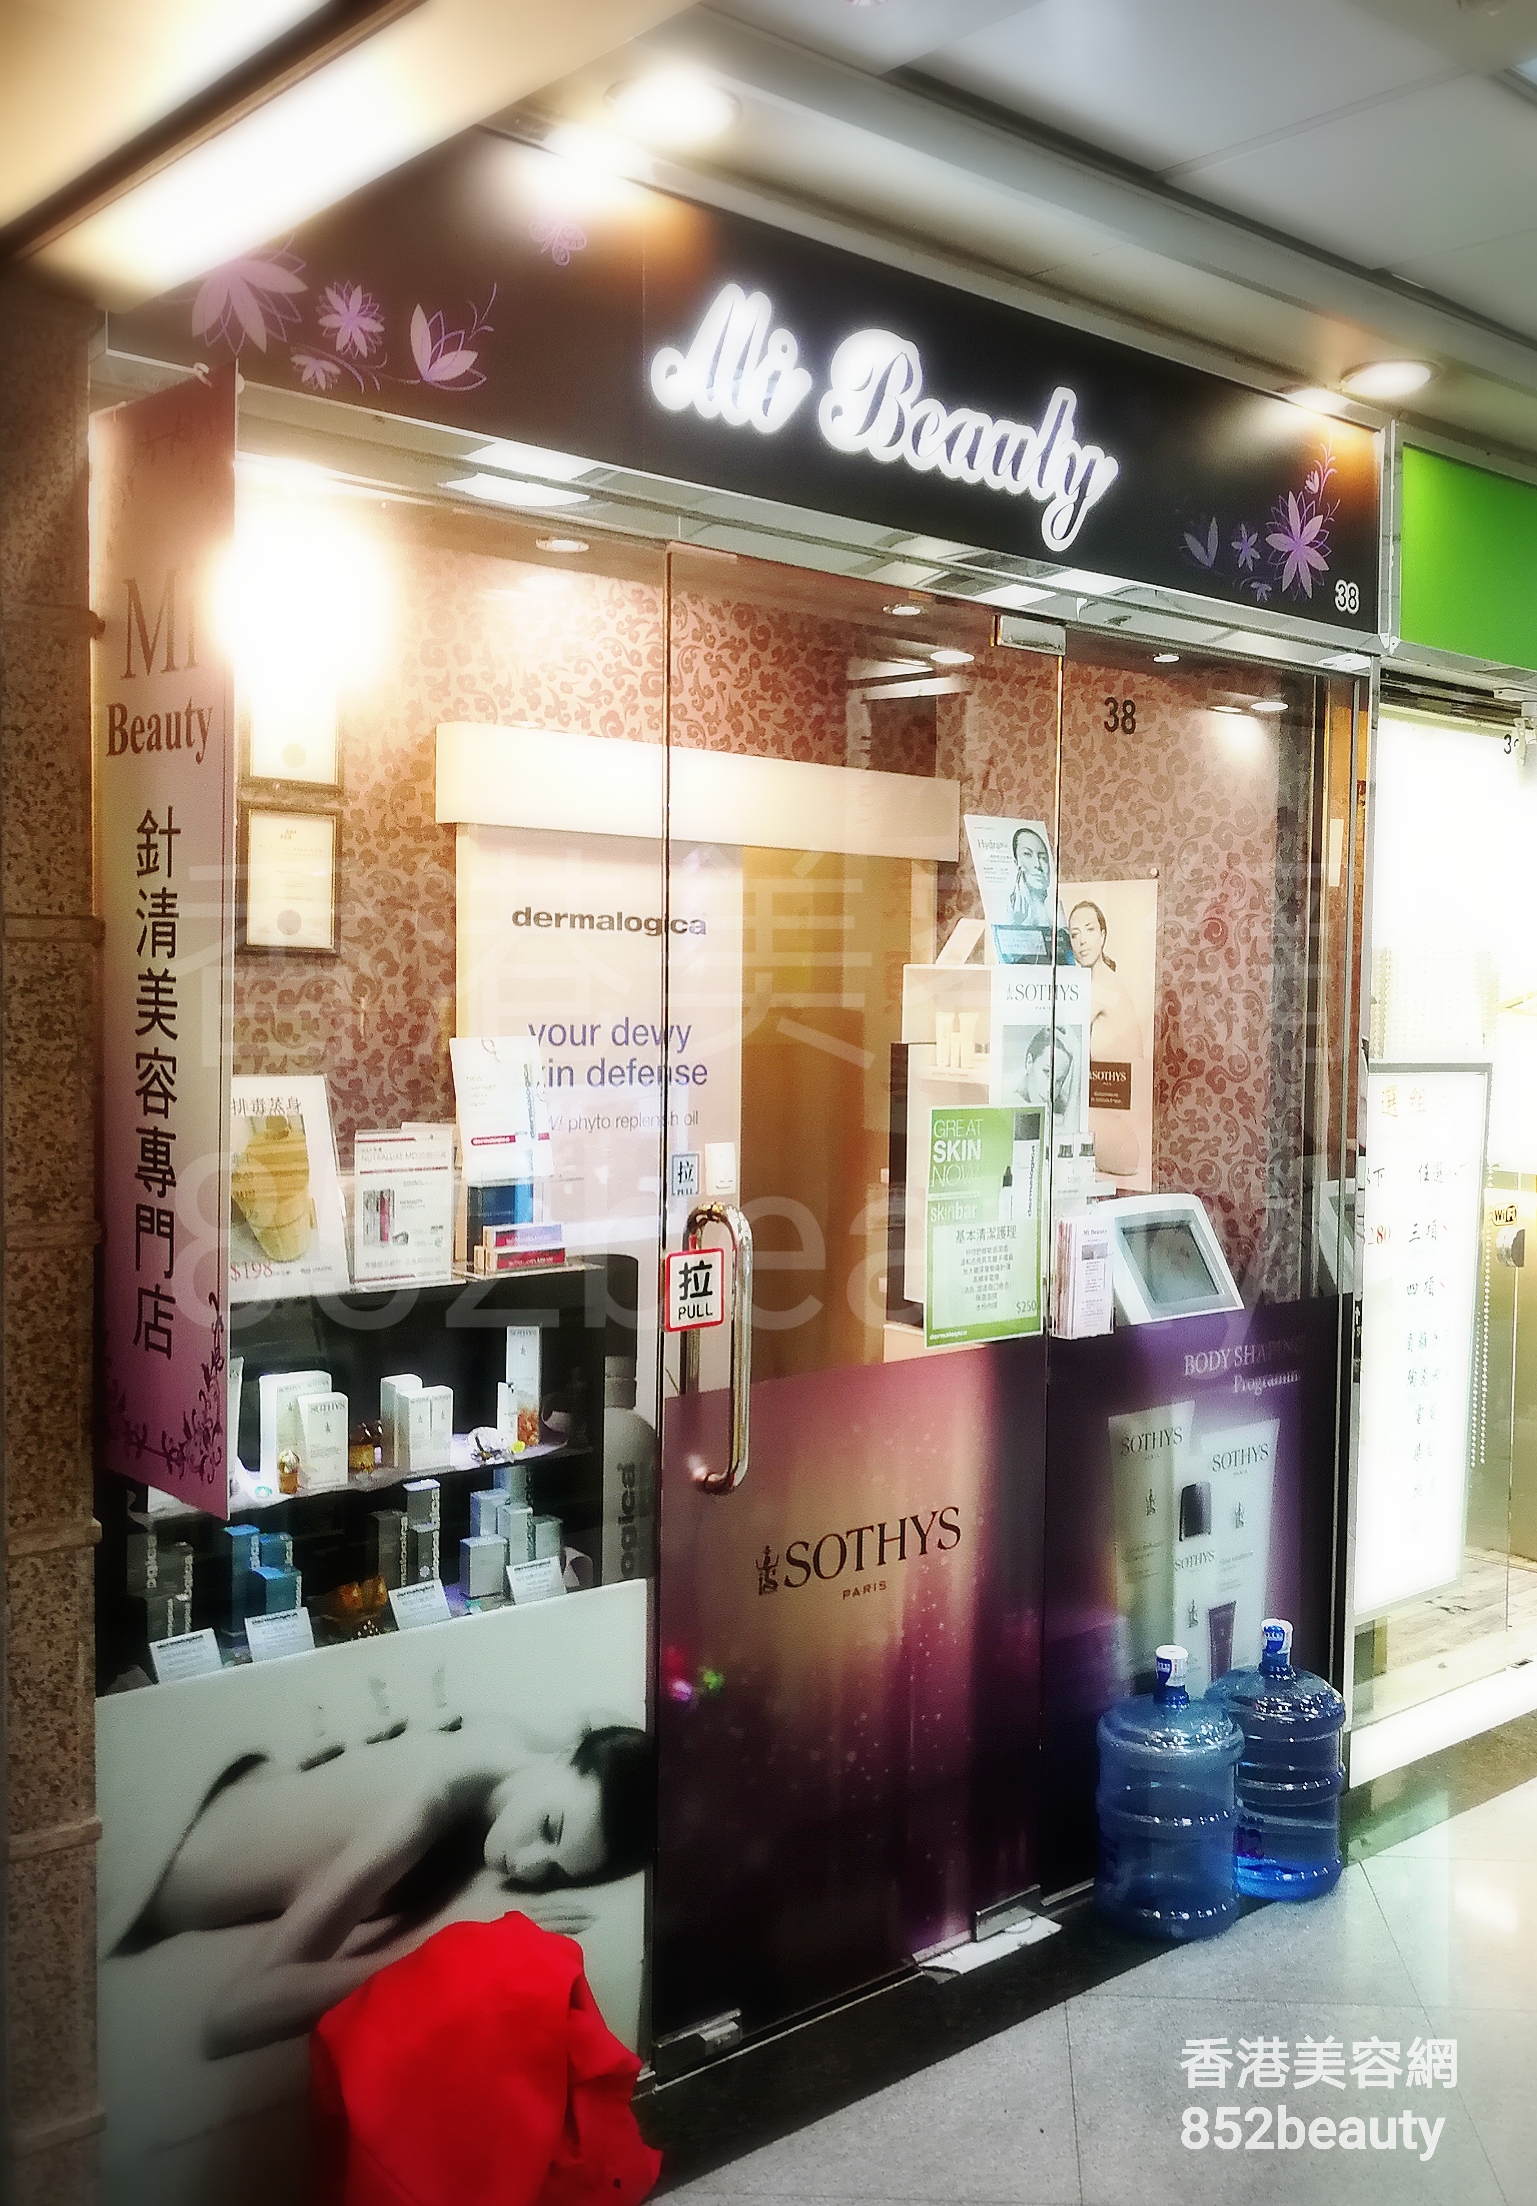 香港美容網 Hong Kong Beauty Salon 美容院 / 美容師: Mi Beauty